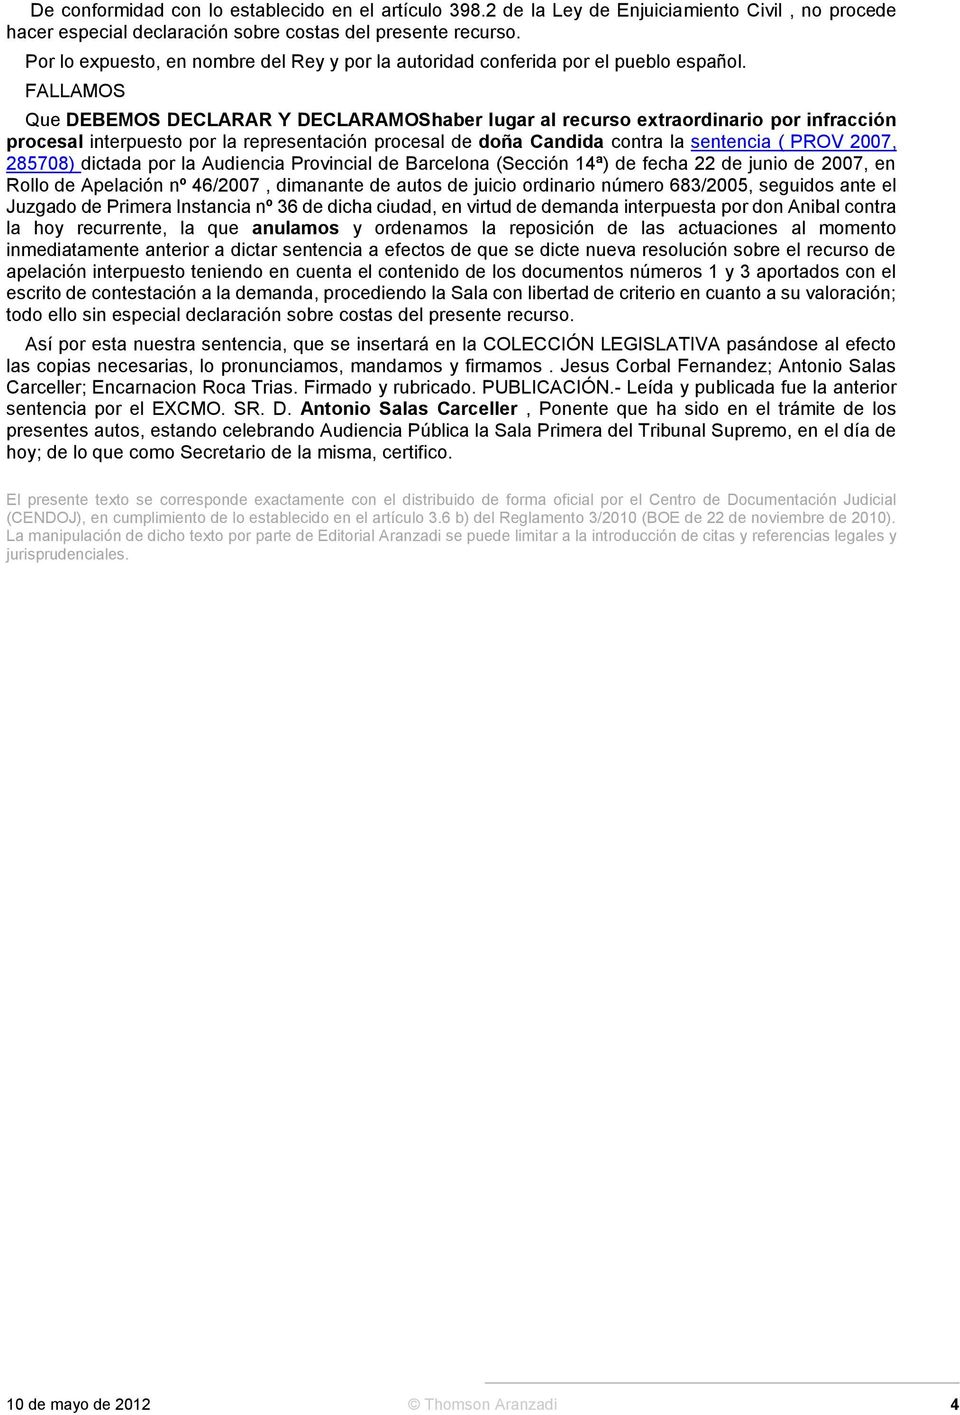 doña Candida contra la sentencia ( PROV 2007, 285708) dictada por la Audiencia Provincial de Barcelona (Sección 14ª) de fecha 22 de junio de 2007, en Rollo de Apelación nº 46/2007, dimanante de autos